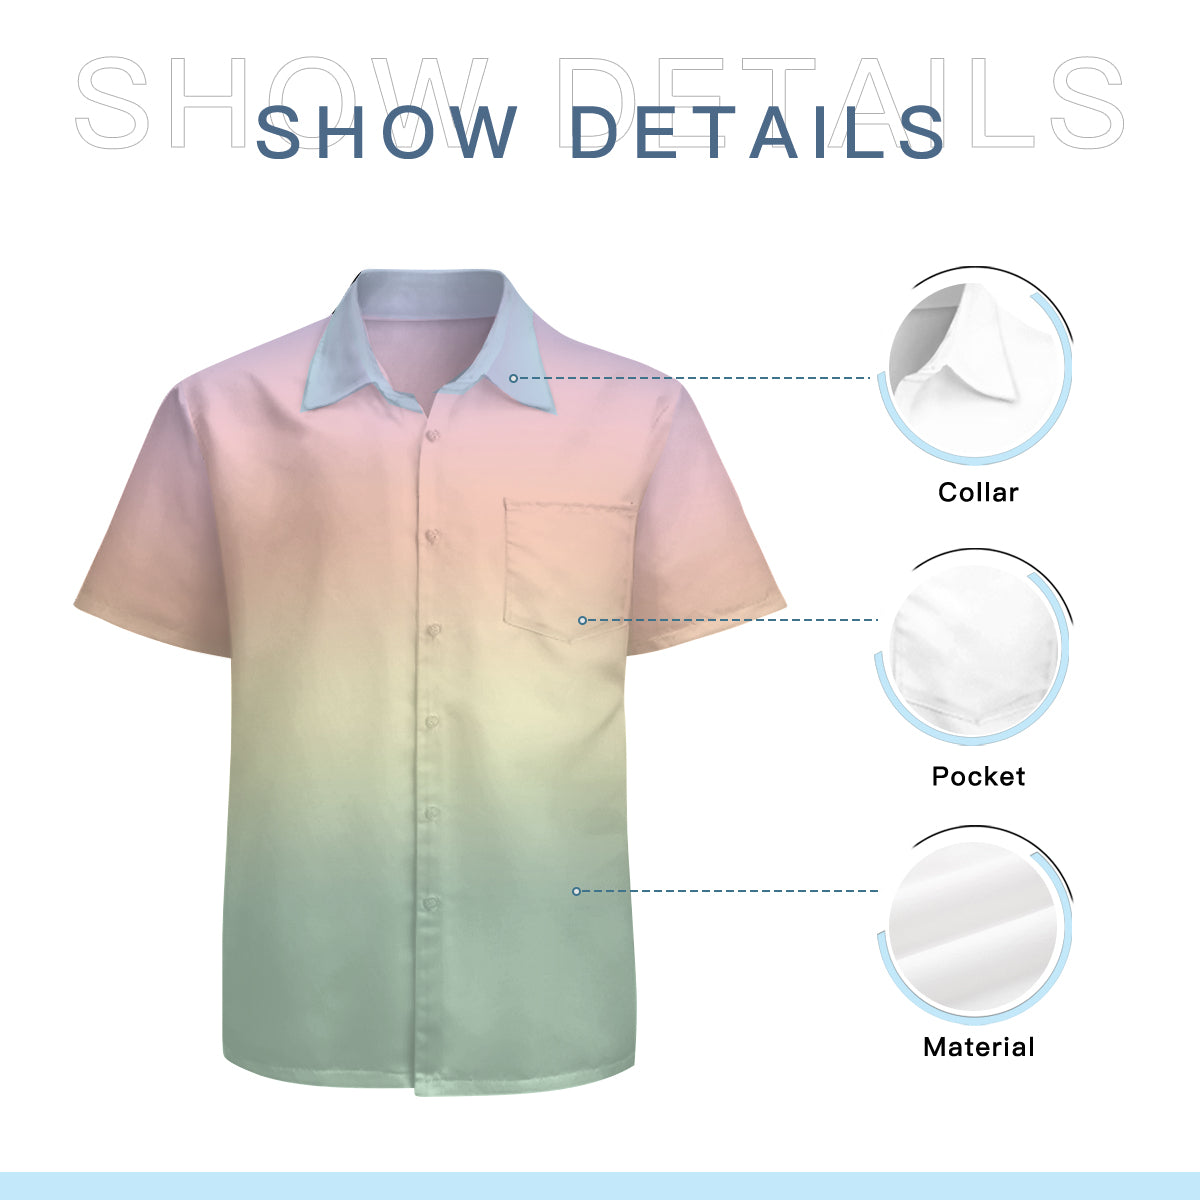 Ombre Shirt Men, Men's Dress Shirt, Men's Shirt, Short Sleeve Shirt Men, Rainbow Shirt Men, Ombre Shirt Men,Pastel Shirt Men